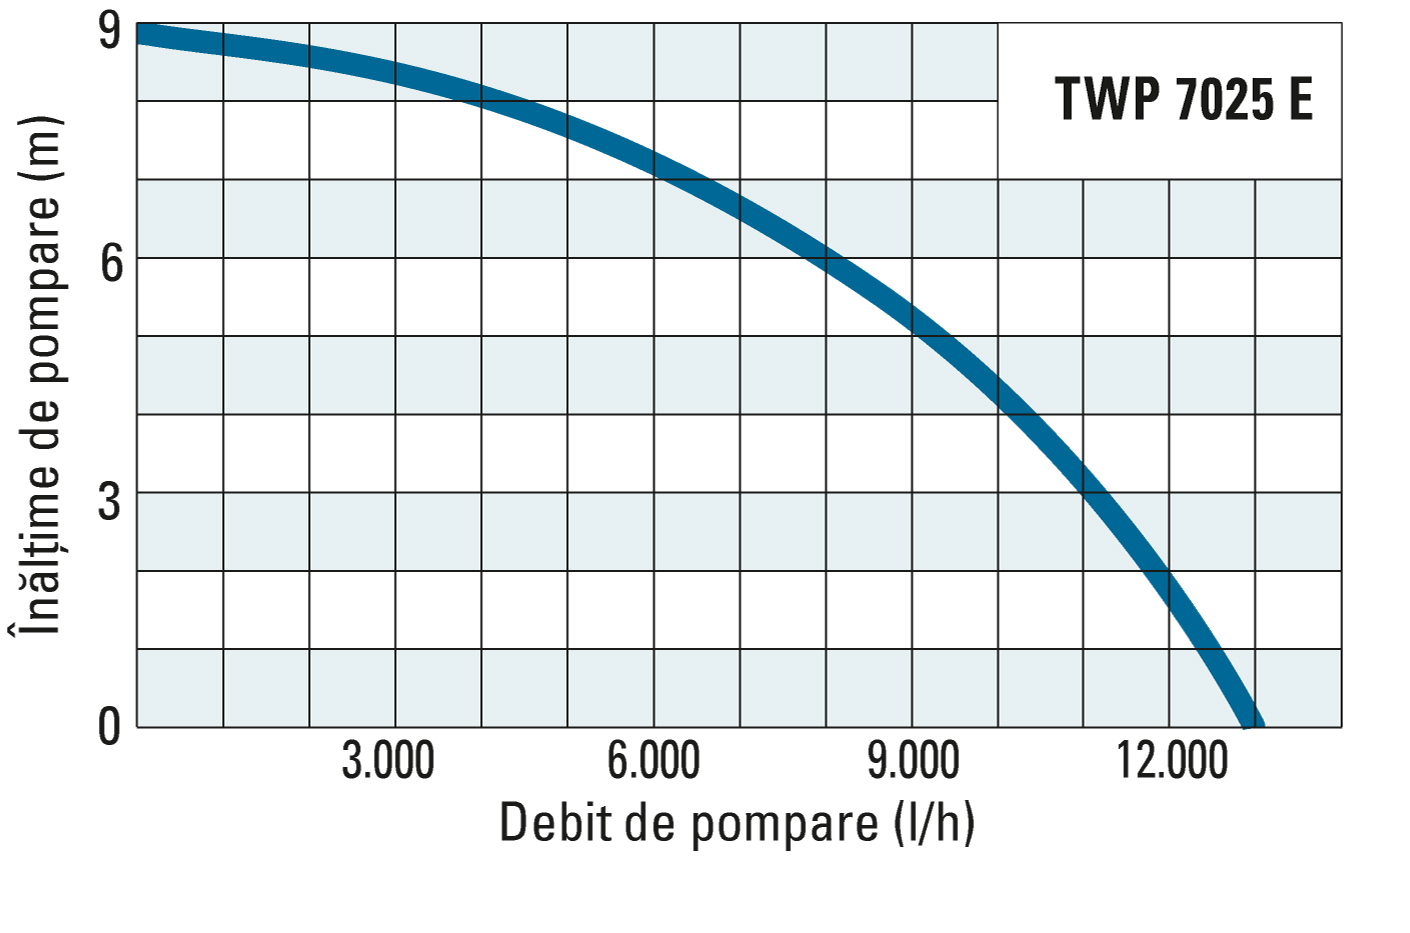 Înălţimea de pompare şi debitul de pompare al unităţii TWP 7025 E